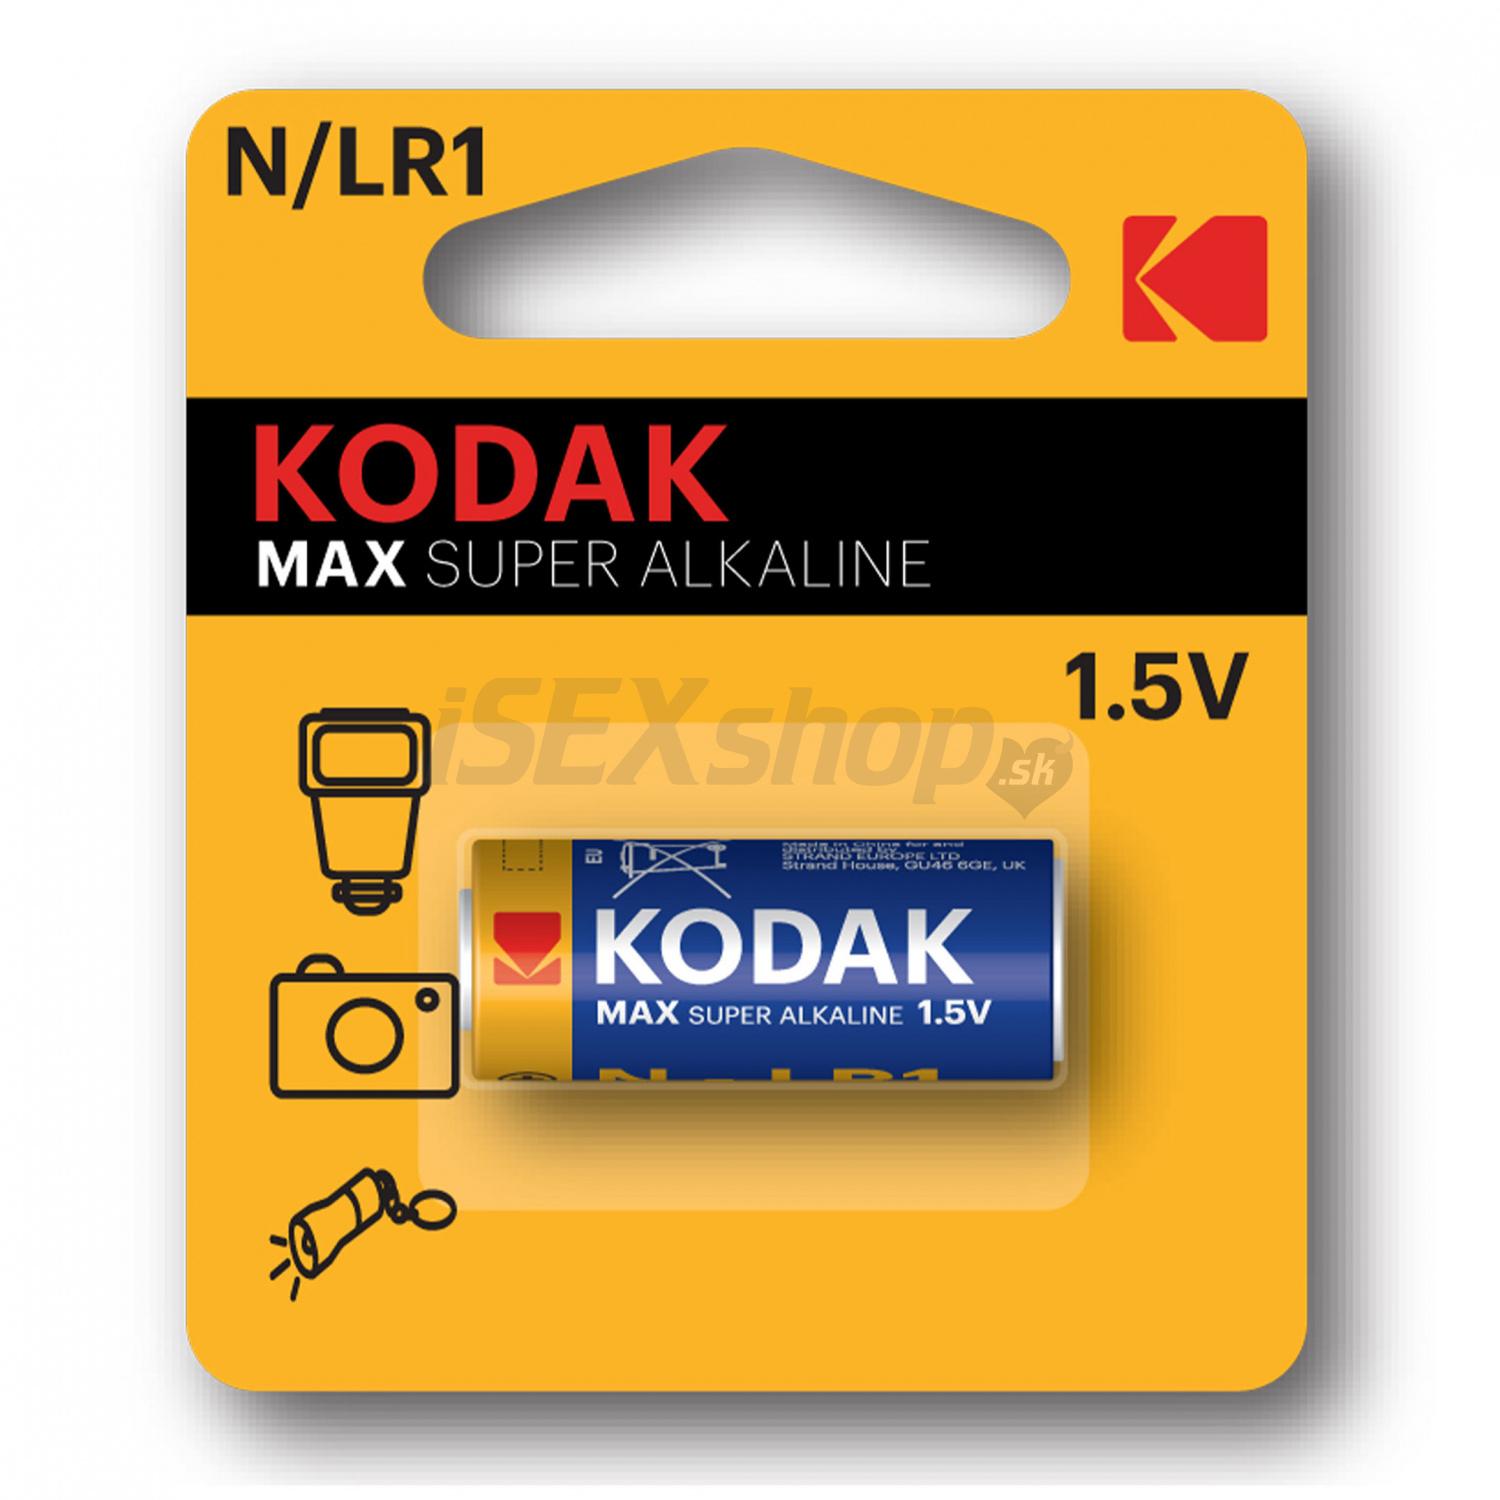 E-shop Kodak Max Super Alkaline N/LR1